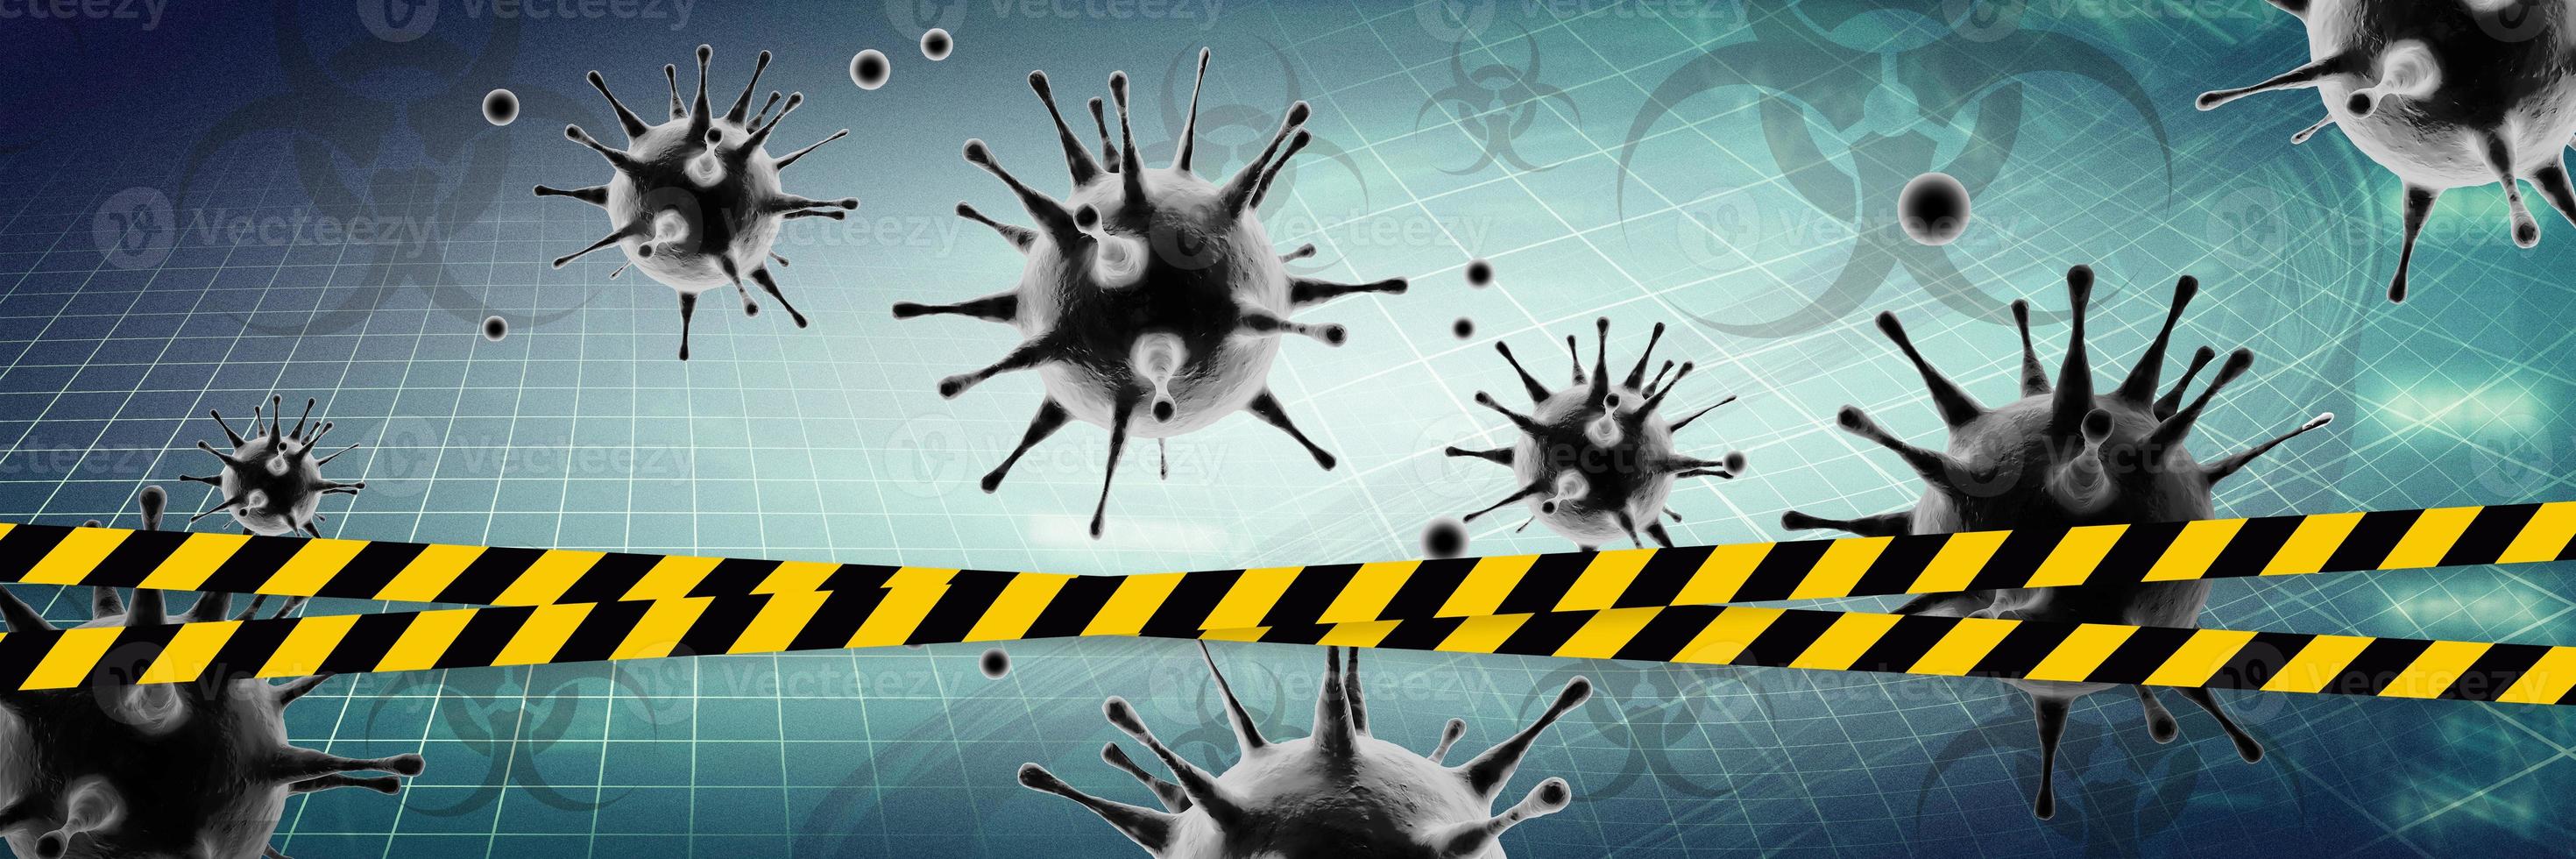 antecedentes del virus de la corona, concepto de riesgo de pandemia. ilustración 3d foto